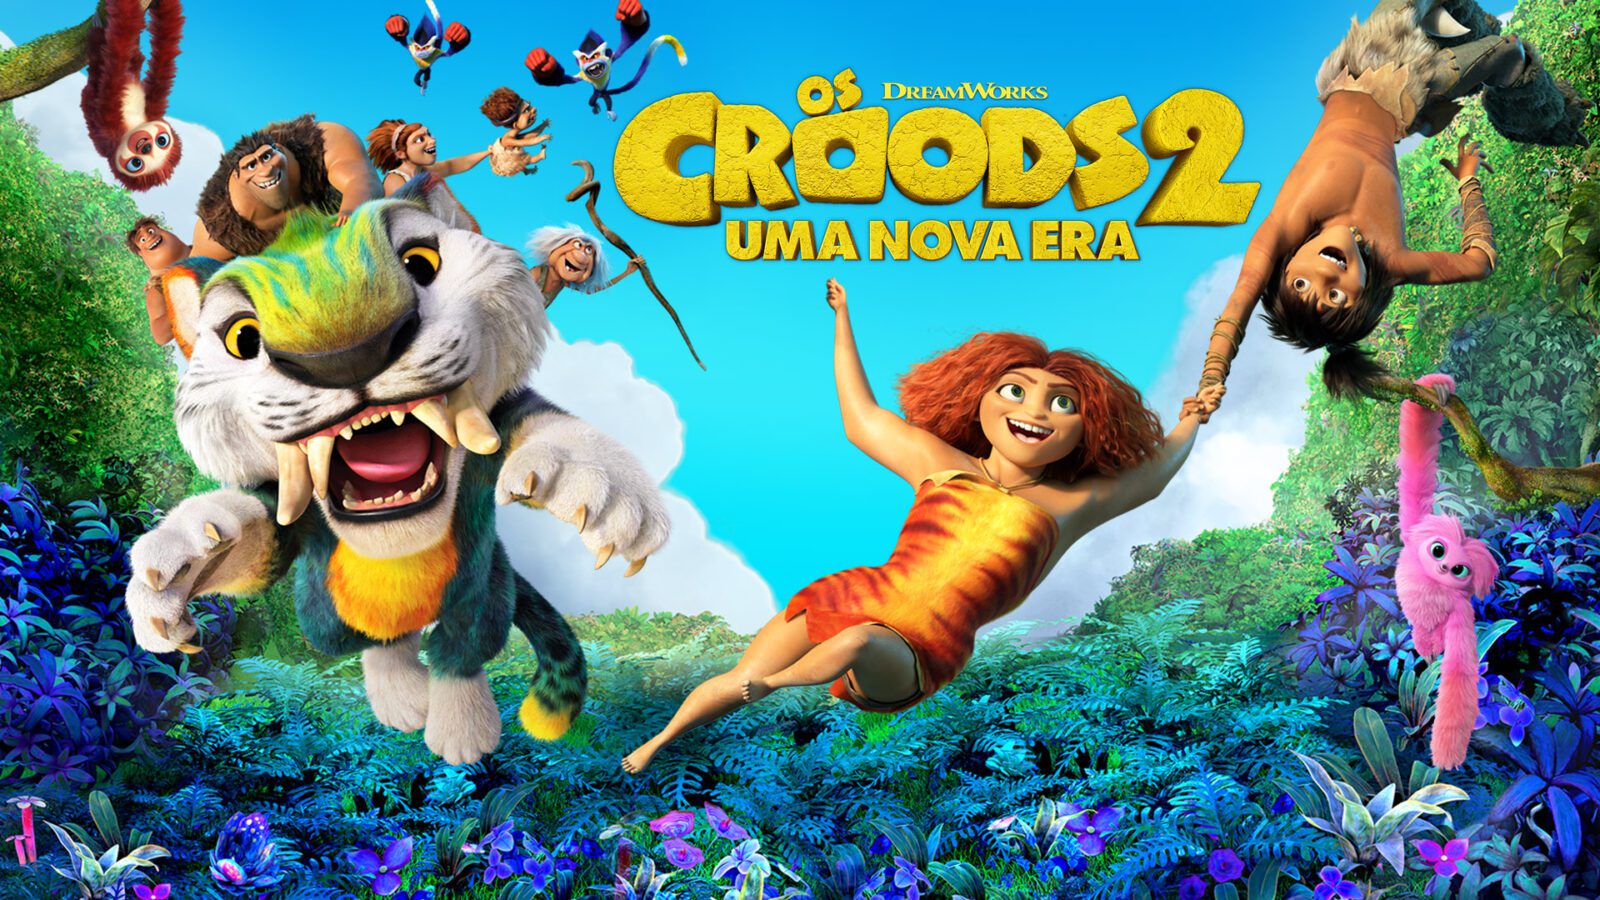 Os Croods 2 é um dos filmes em alta na Netflix